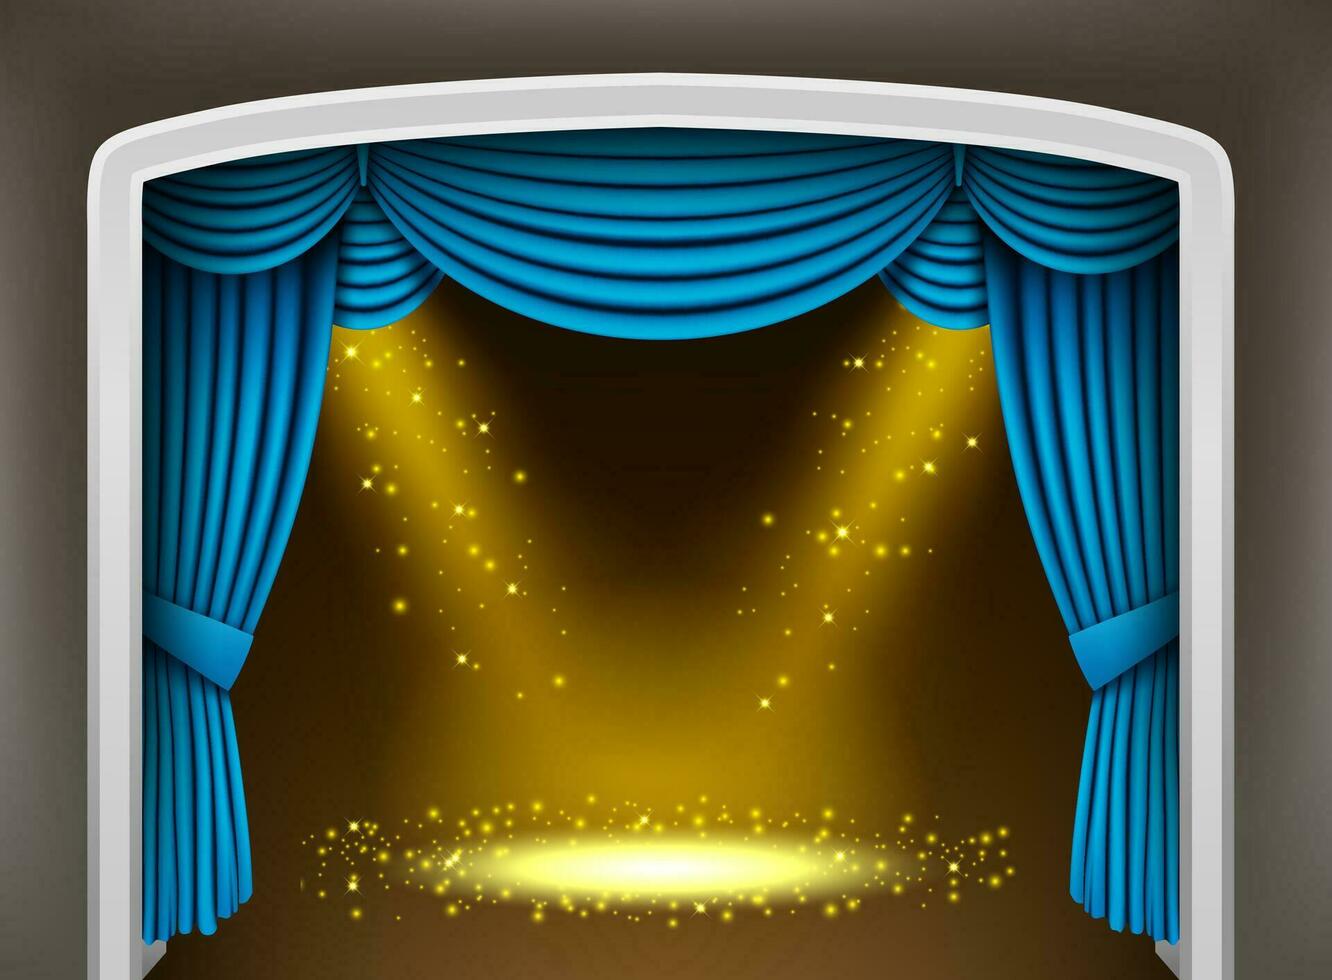 azul cortina do clássico teatro com ouro holofotes e faíscas, vetor ilustração